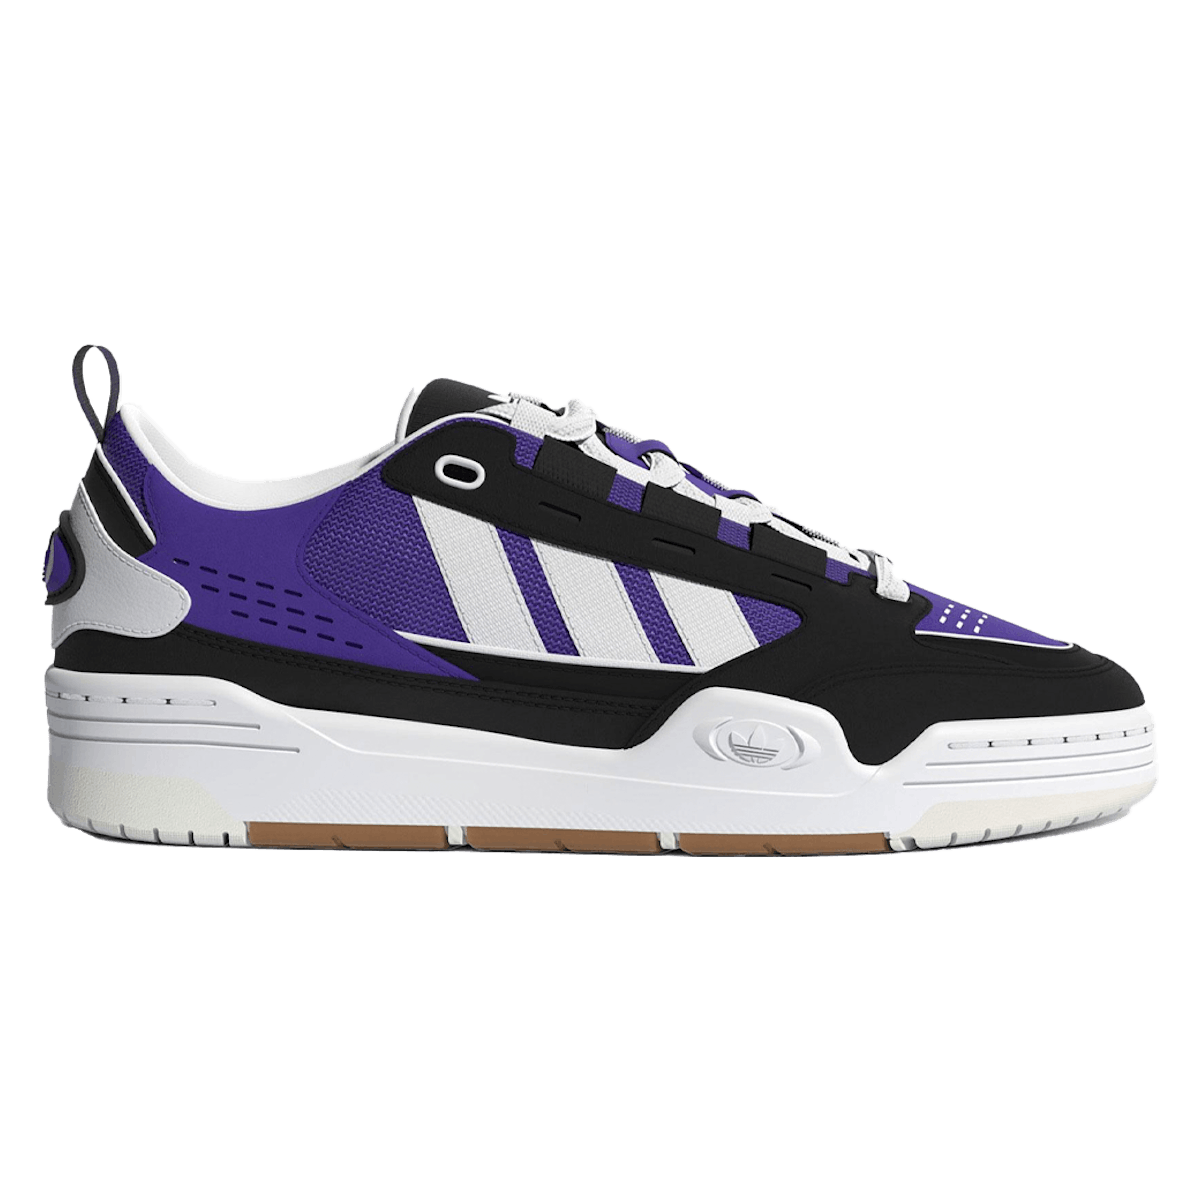 Adidas ADI2000 "Purple"